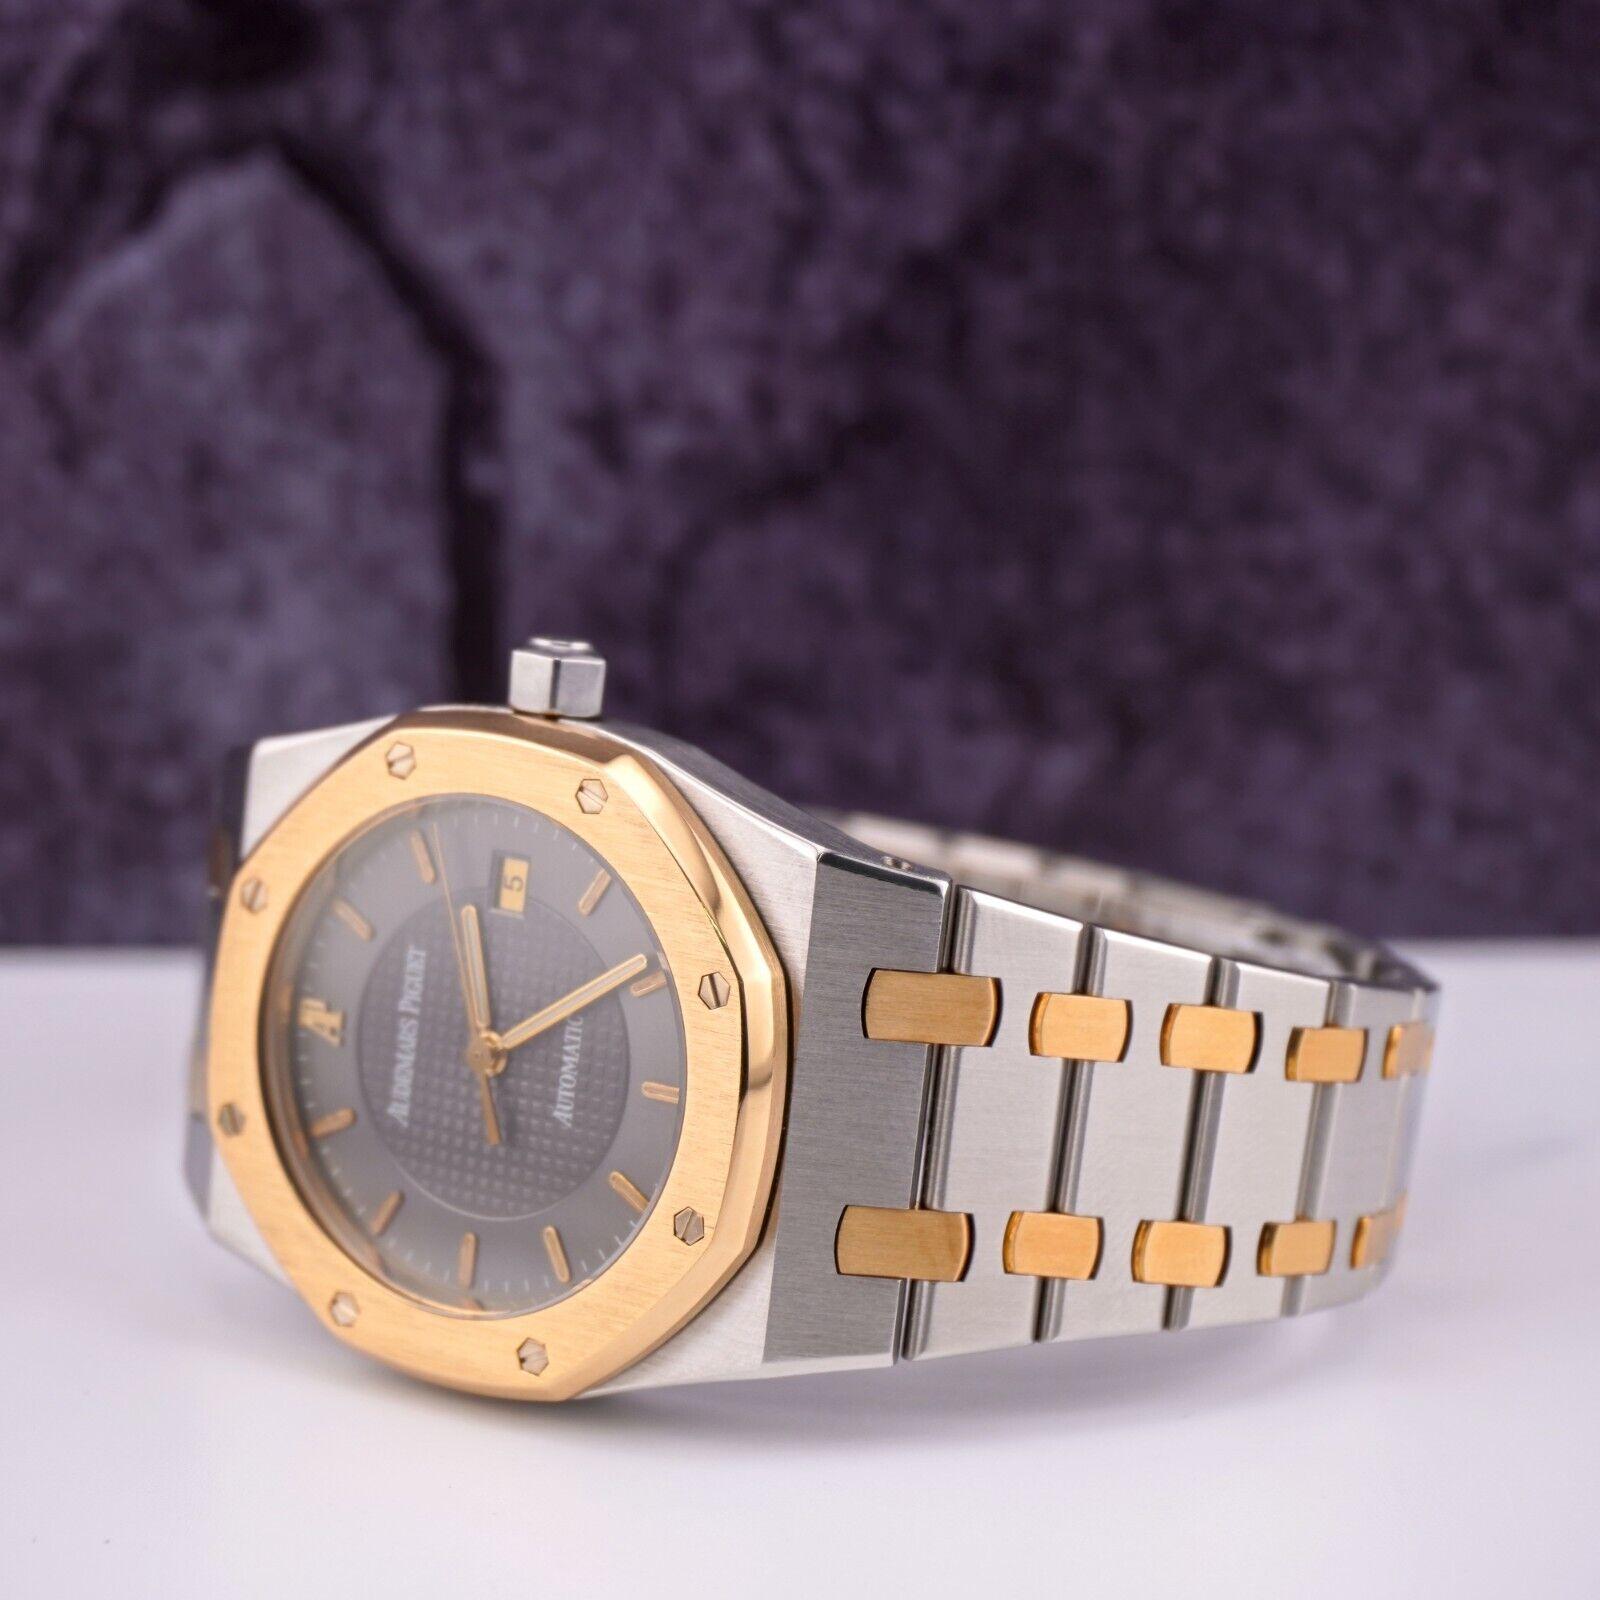 Audemars Piguet Royal Oak Auto 33mm 18k Gold & Steel Watch 15050SA LIMITED 200pc For Sale 3